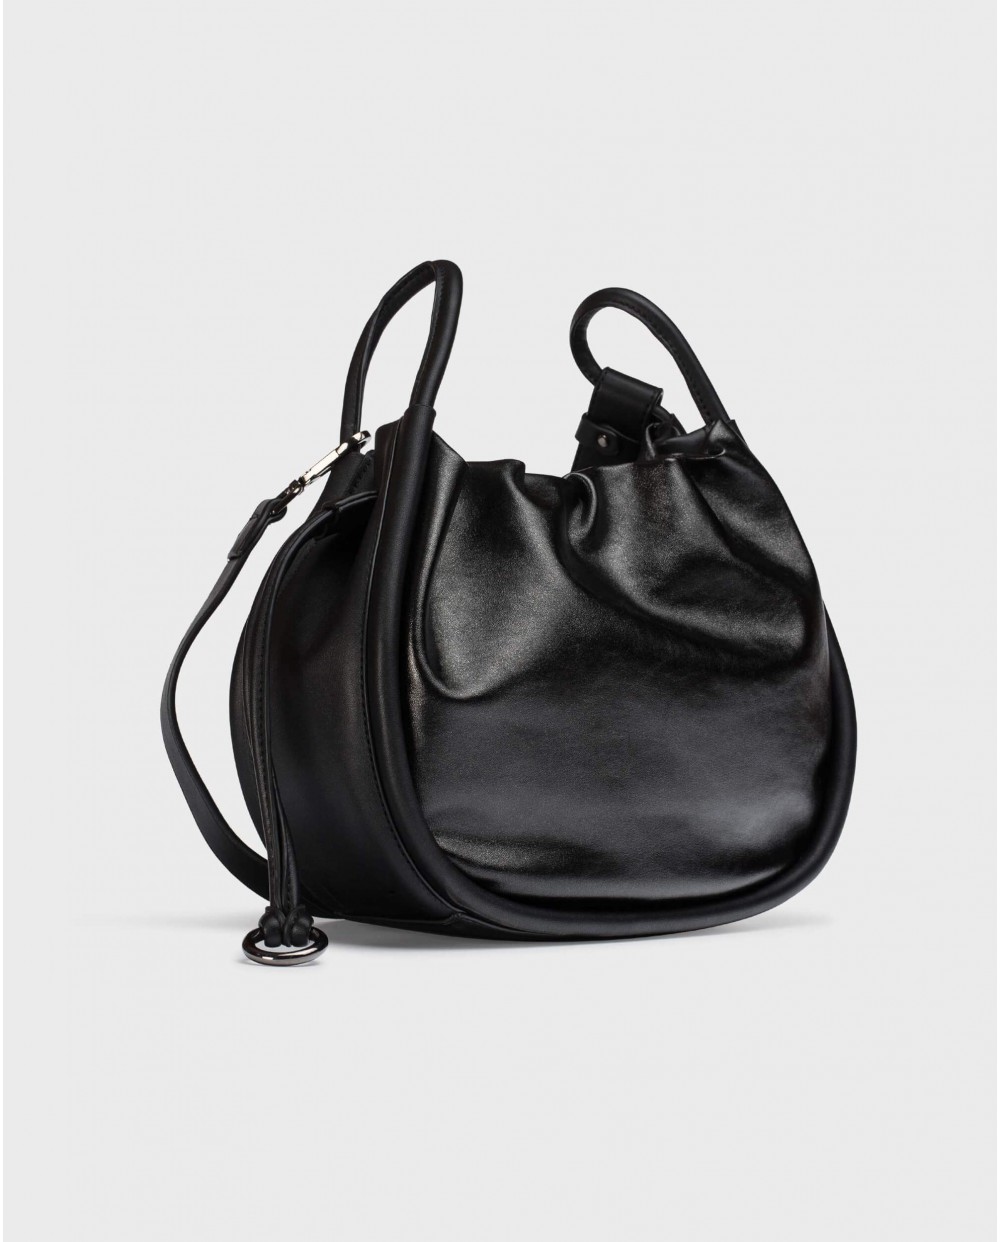 Wonders-Bags-PEARL Black Bag